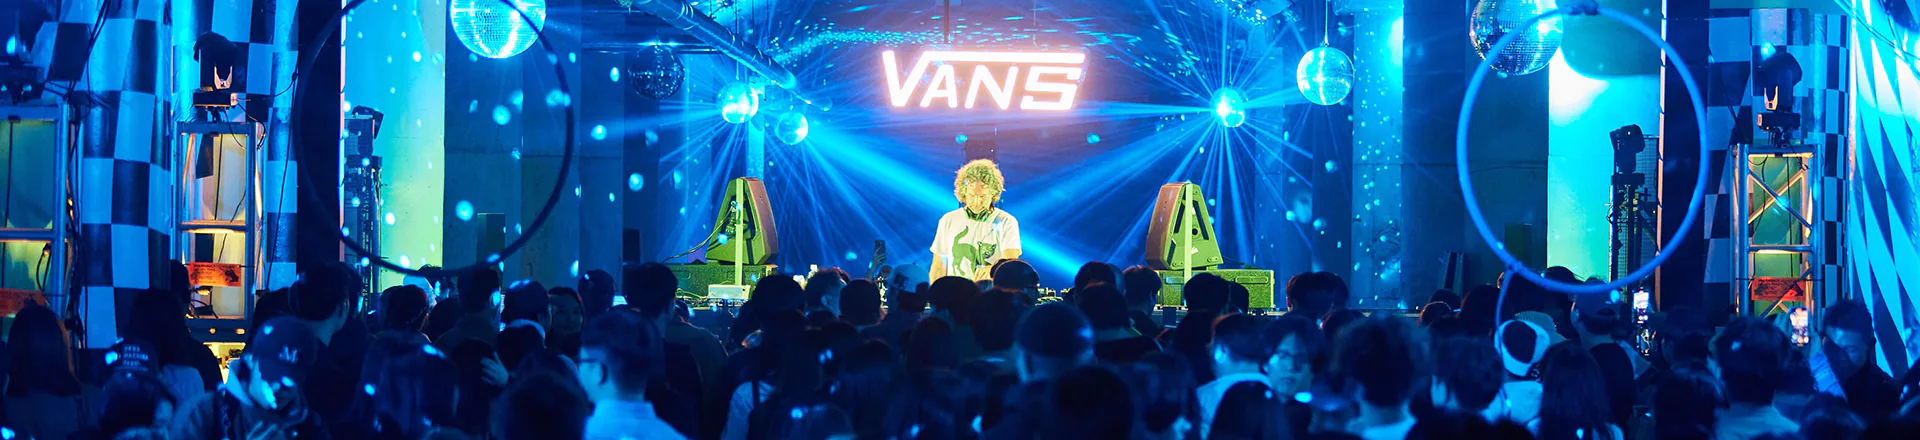 Systemy głośnikowe LD Systems uświetniły imprezę VANS w Seulu